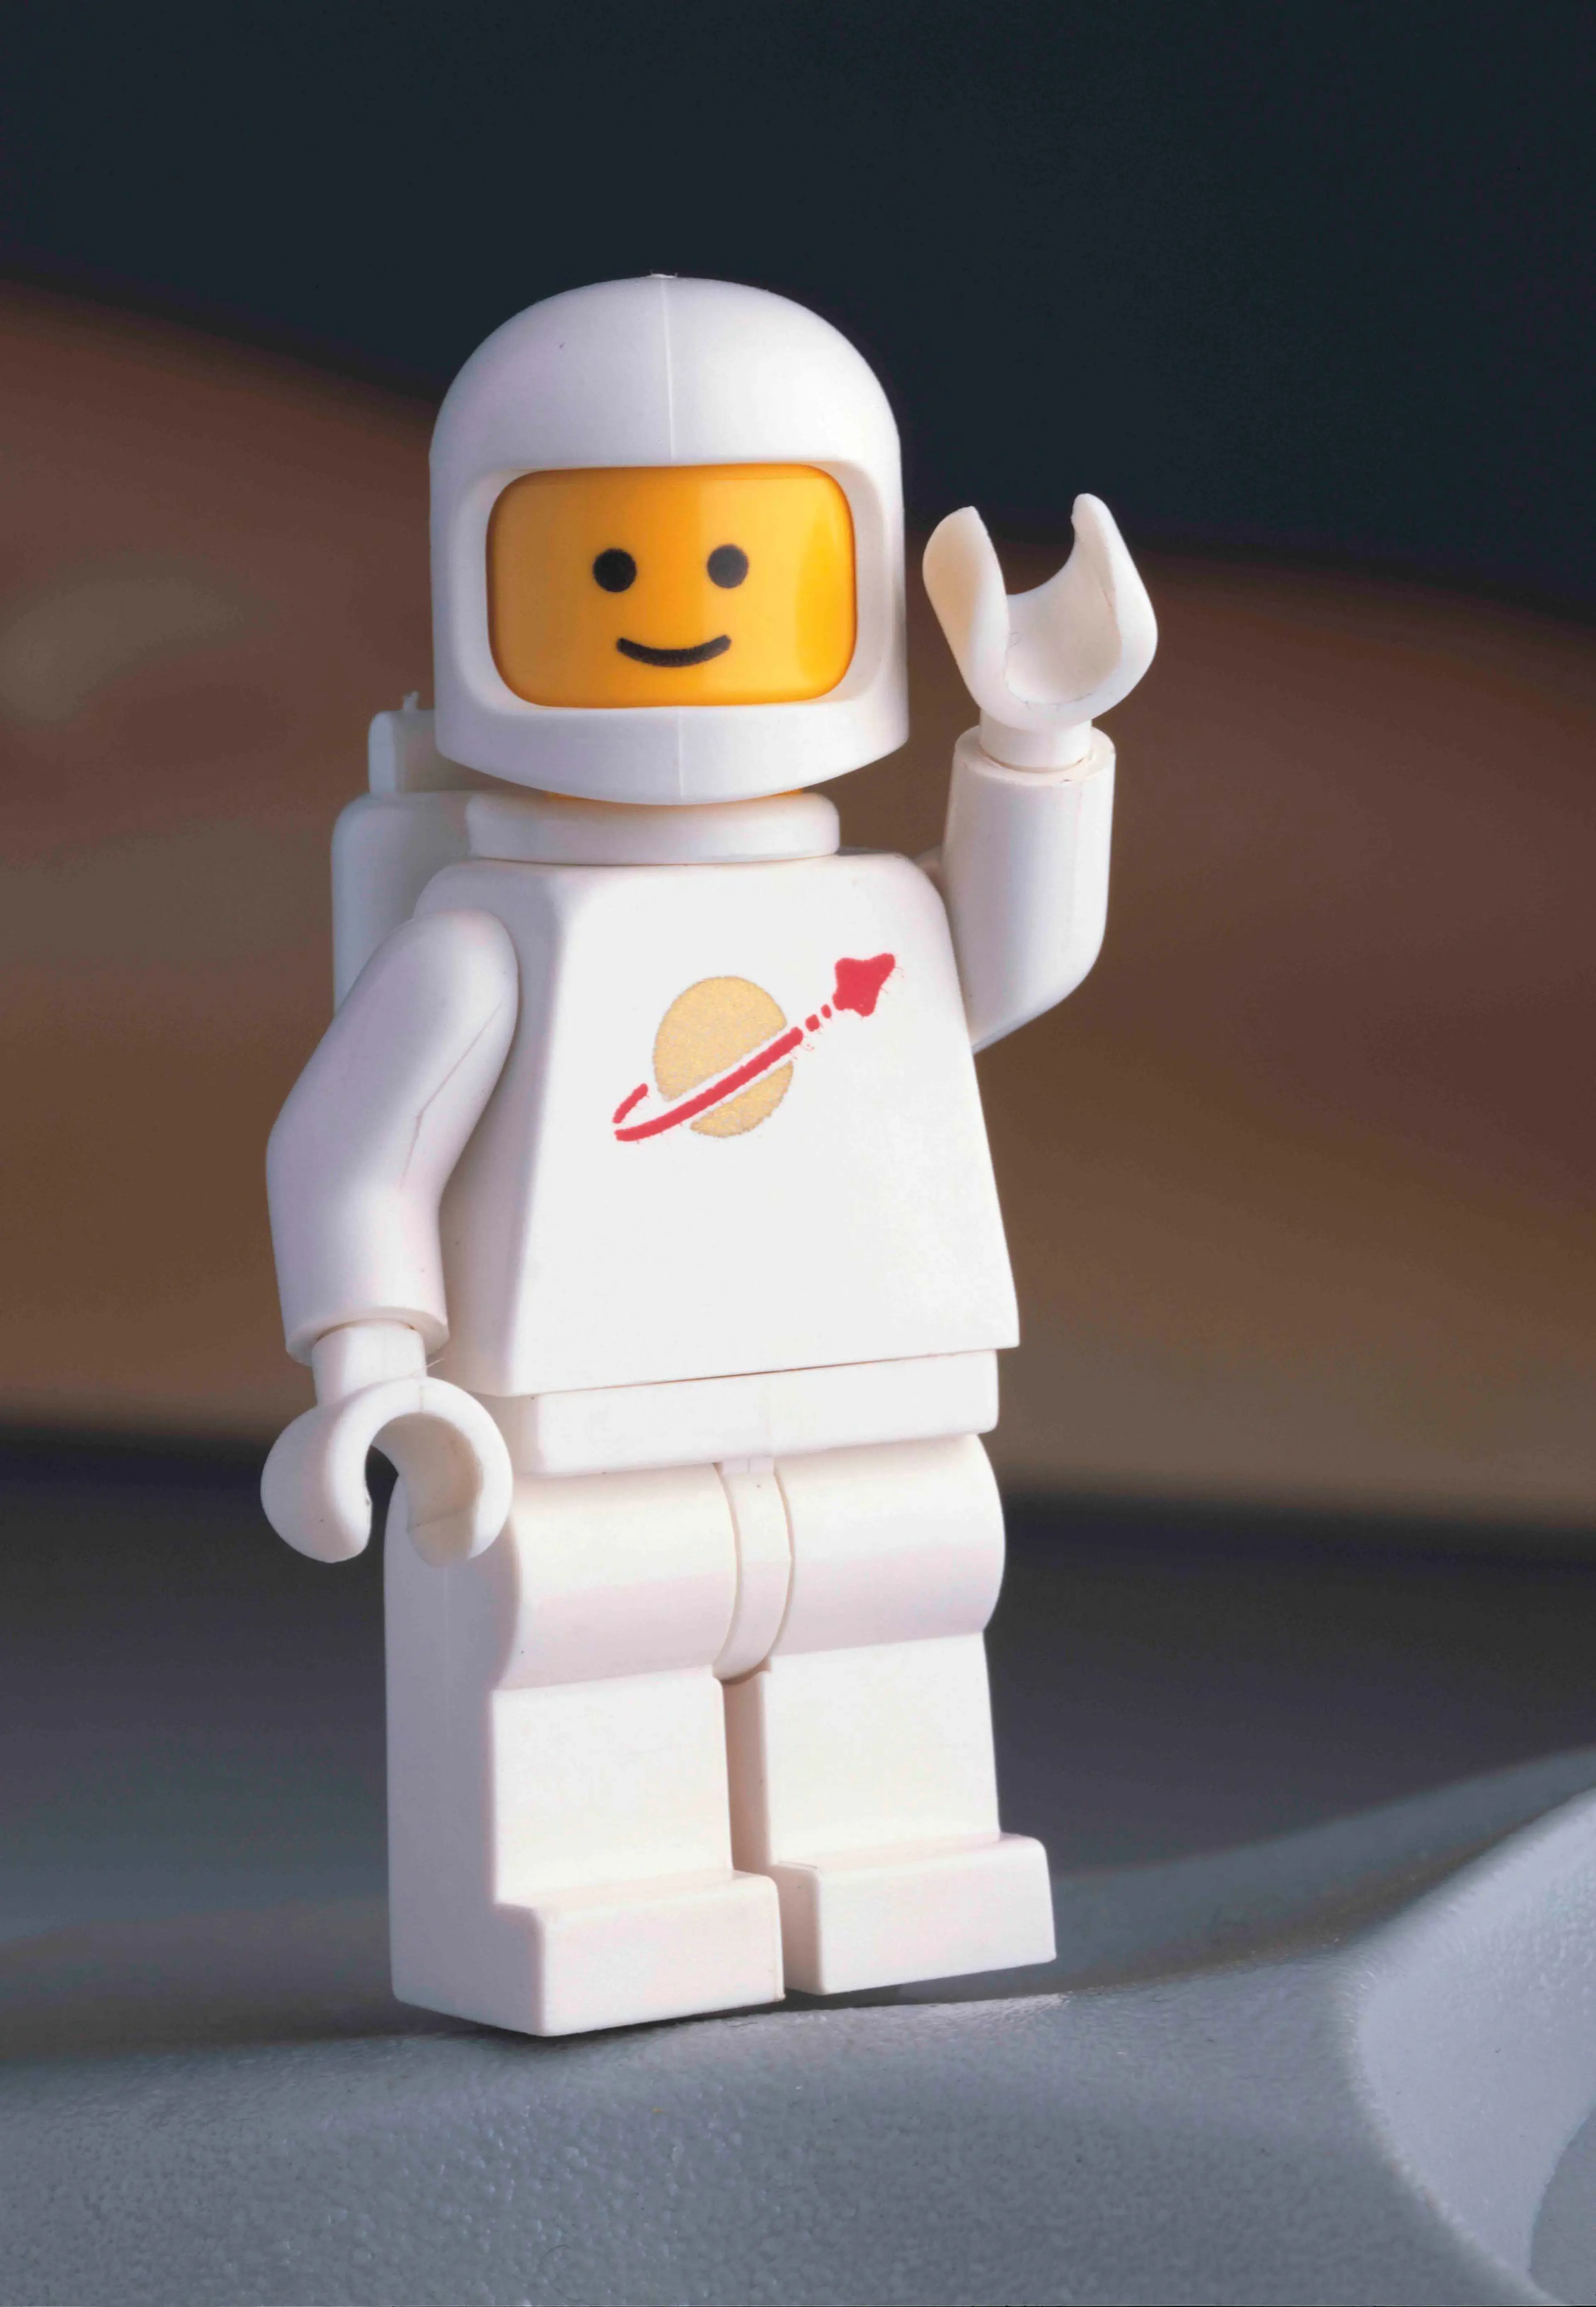 White LEGO Space minifigure